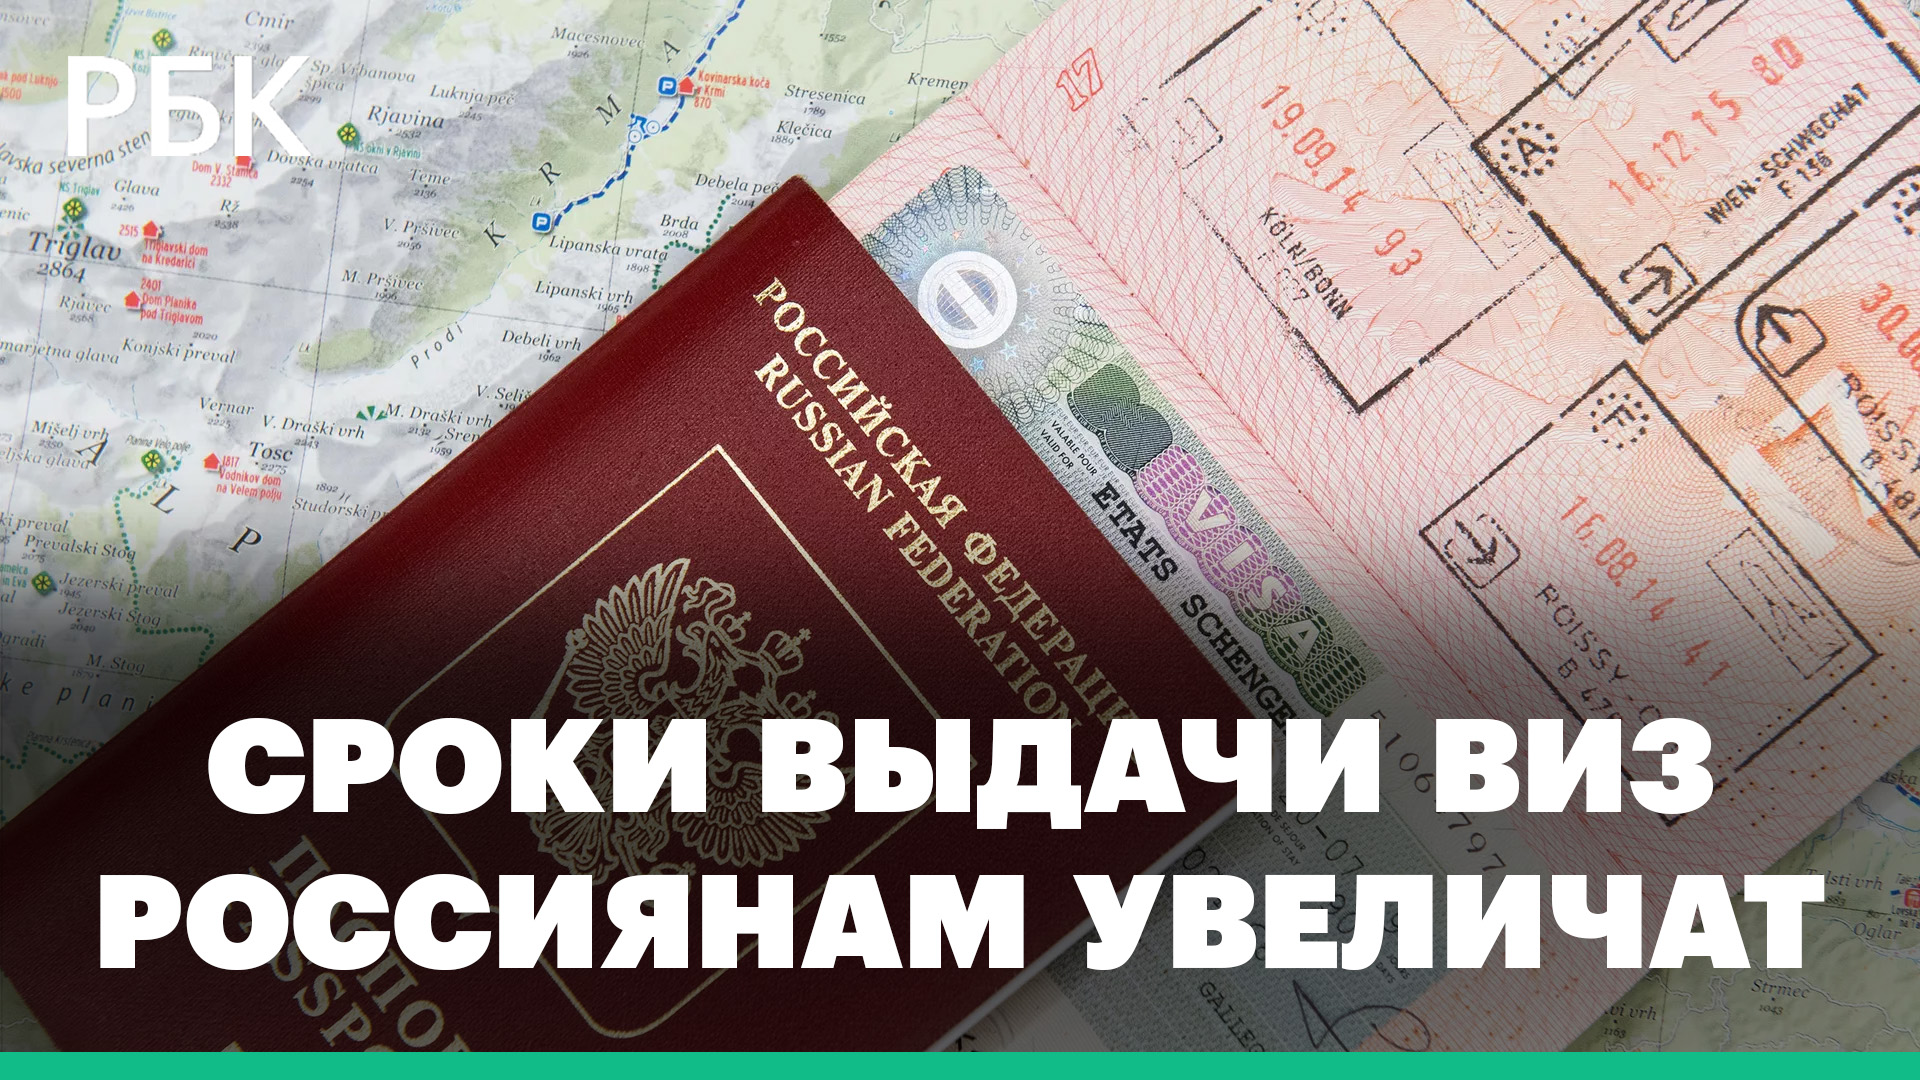 Сроки выдачи виз россиянам могут вырасти до полугода